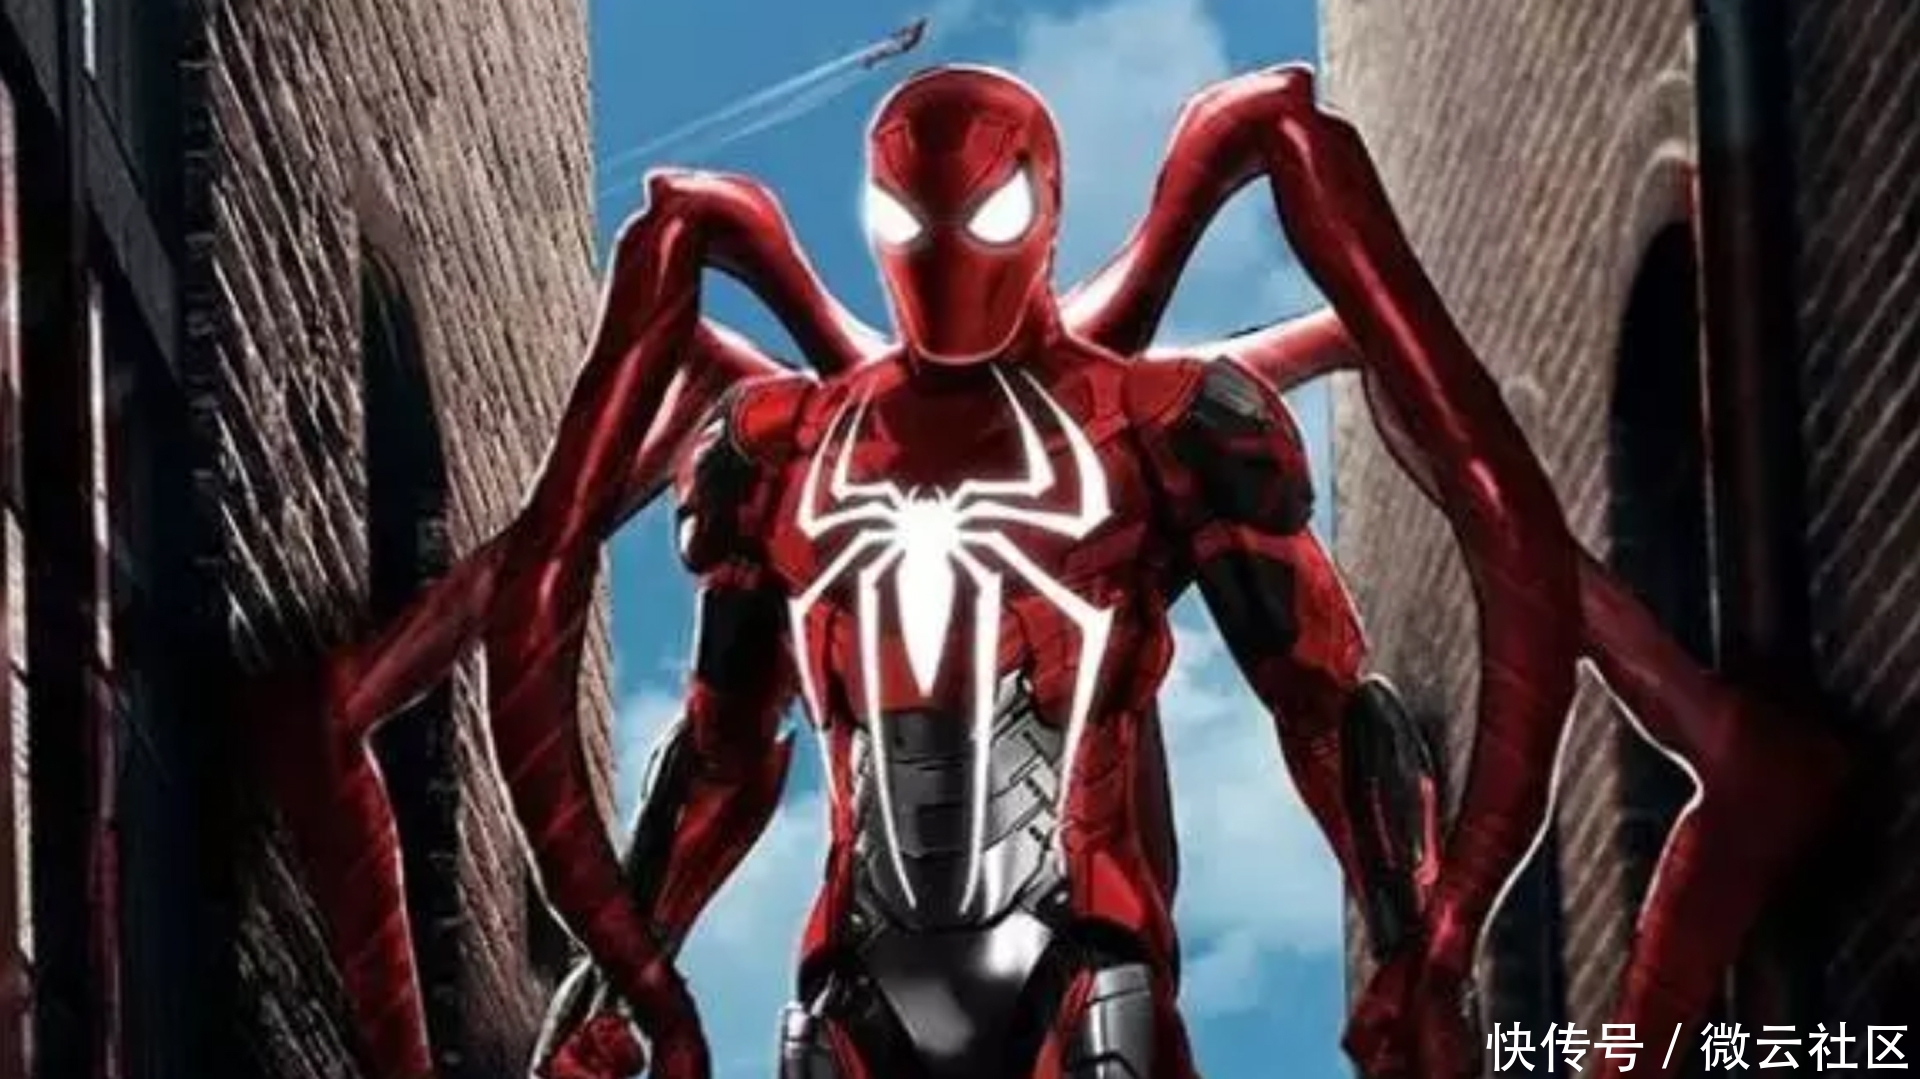 复联4最新概念海报:蜘蛛侠战衣加强,而钢铁侠